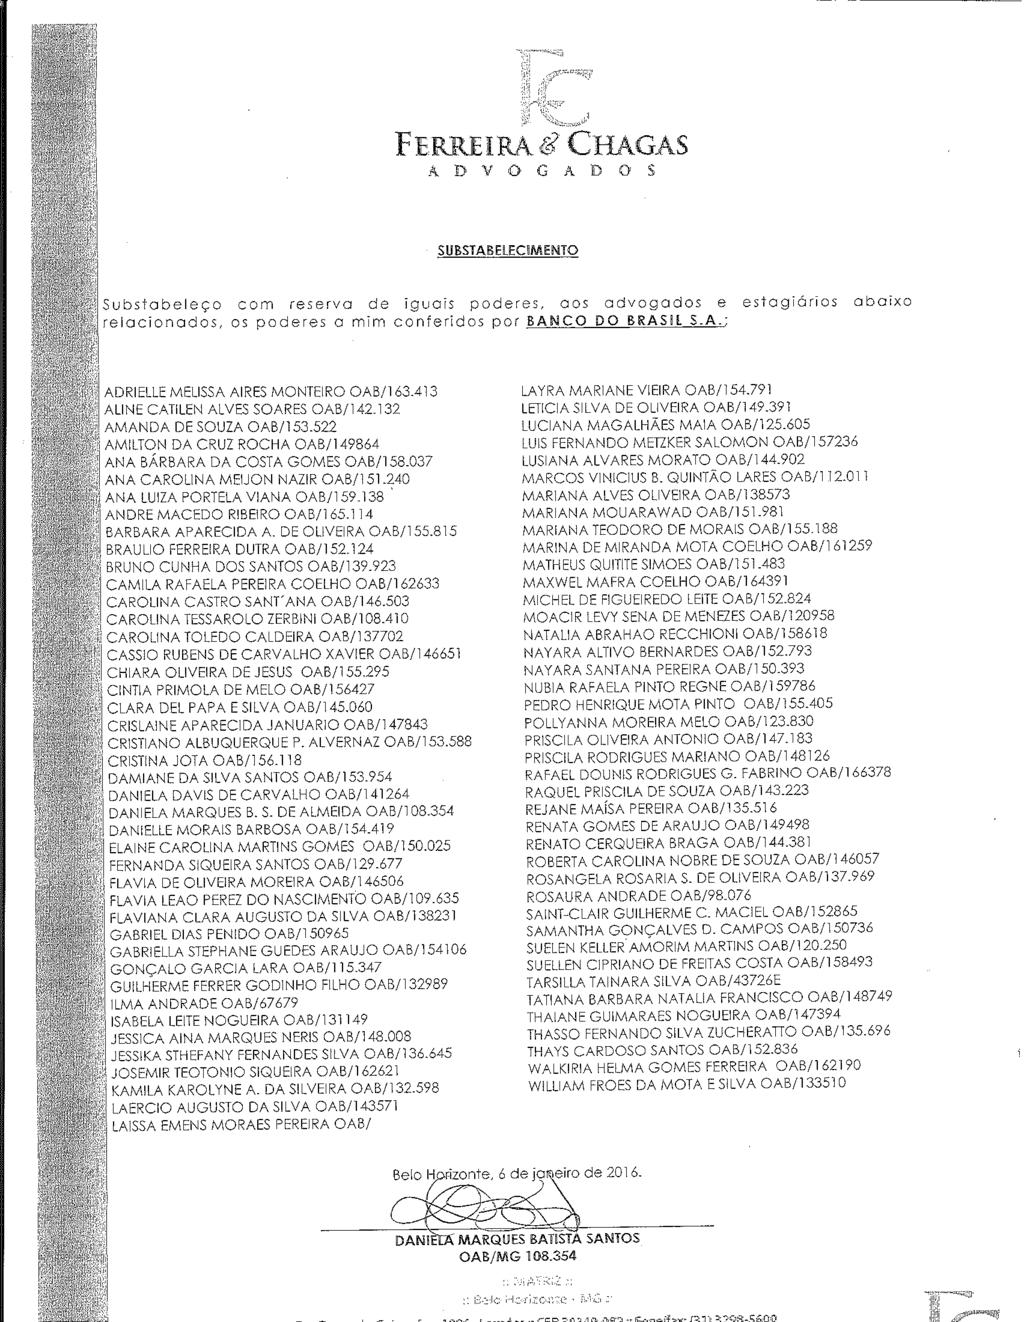 fls. 104 Este documento é cópia do original, assinado digitalmente por MARCOS CALDAS MARTINS CHAGAS e Tribunal de Justica Sao Paulo, protocolado em 11/04/2016 às 13:39, sob o número